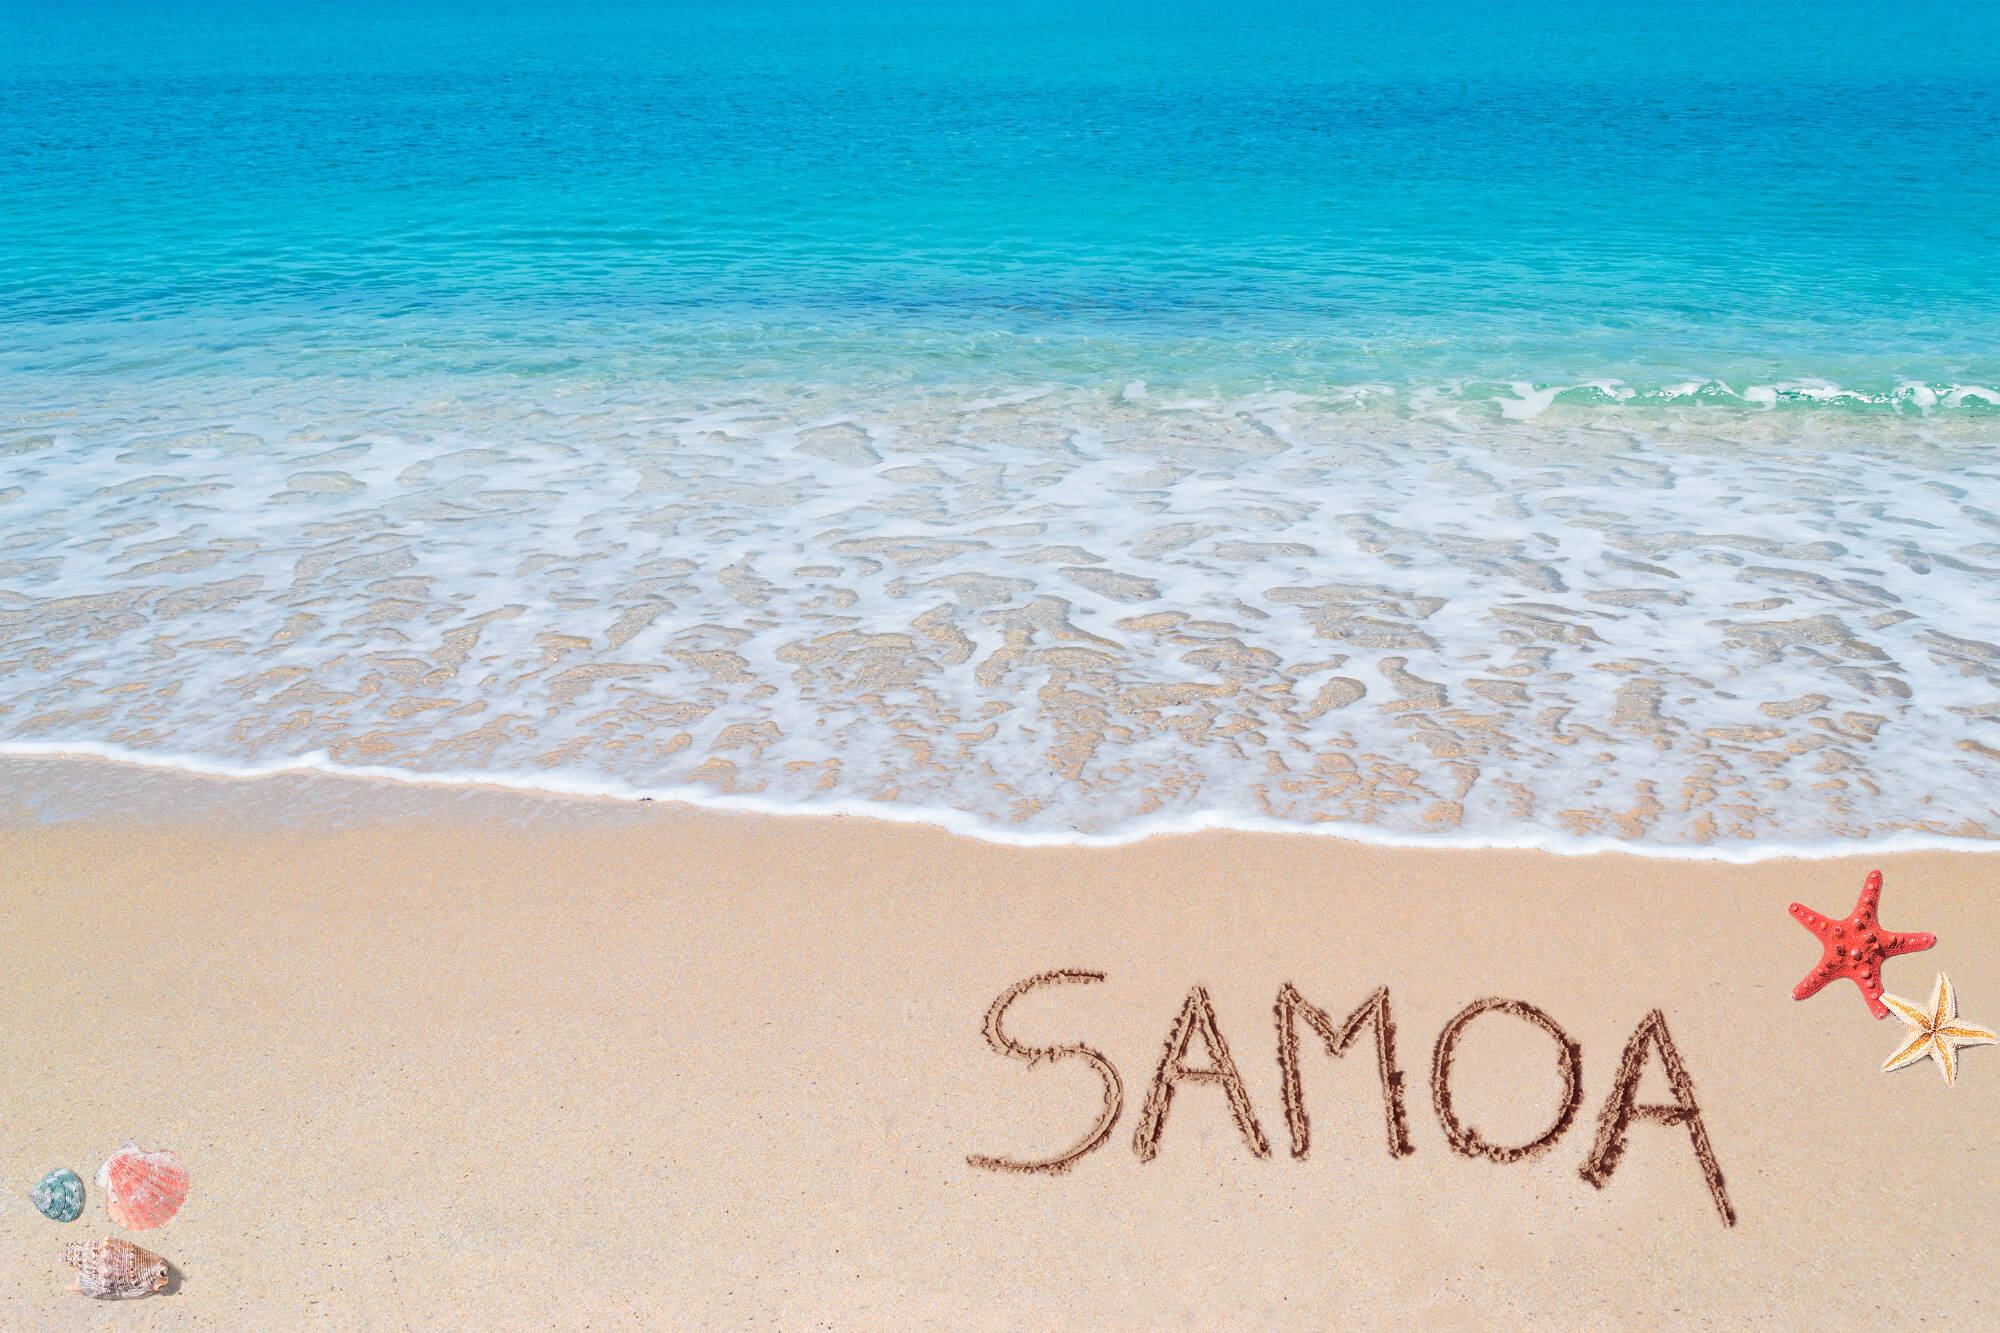 West Samoa